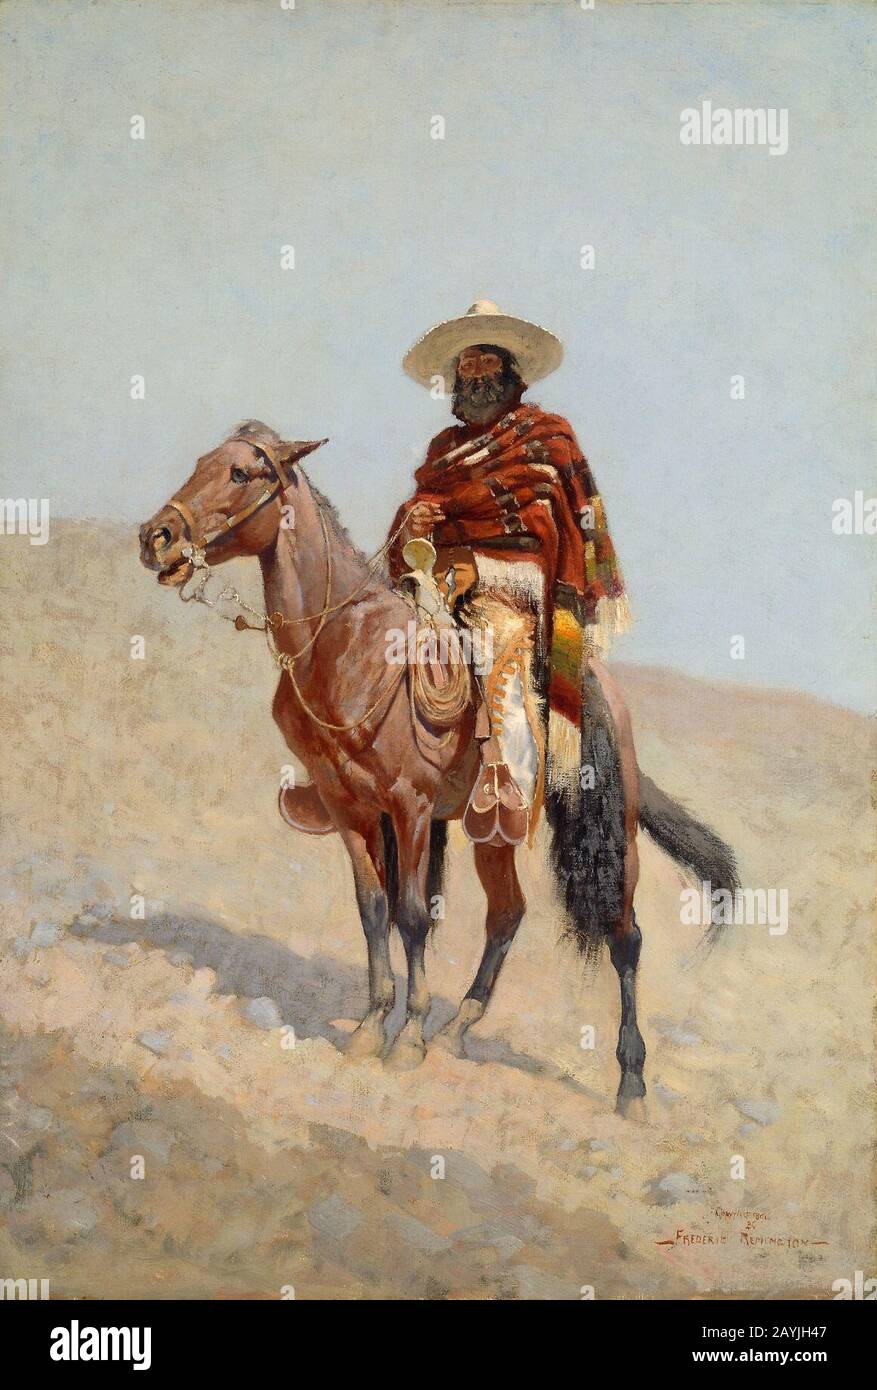 Frederic Remington - A Mexican Vaquero Stock Photo